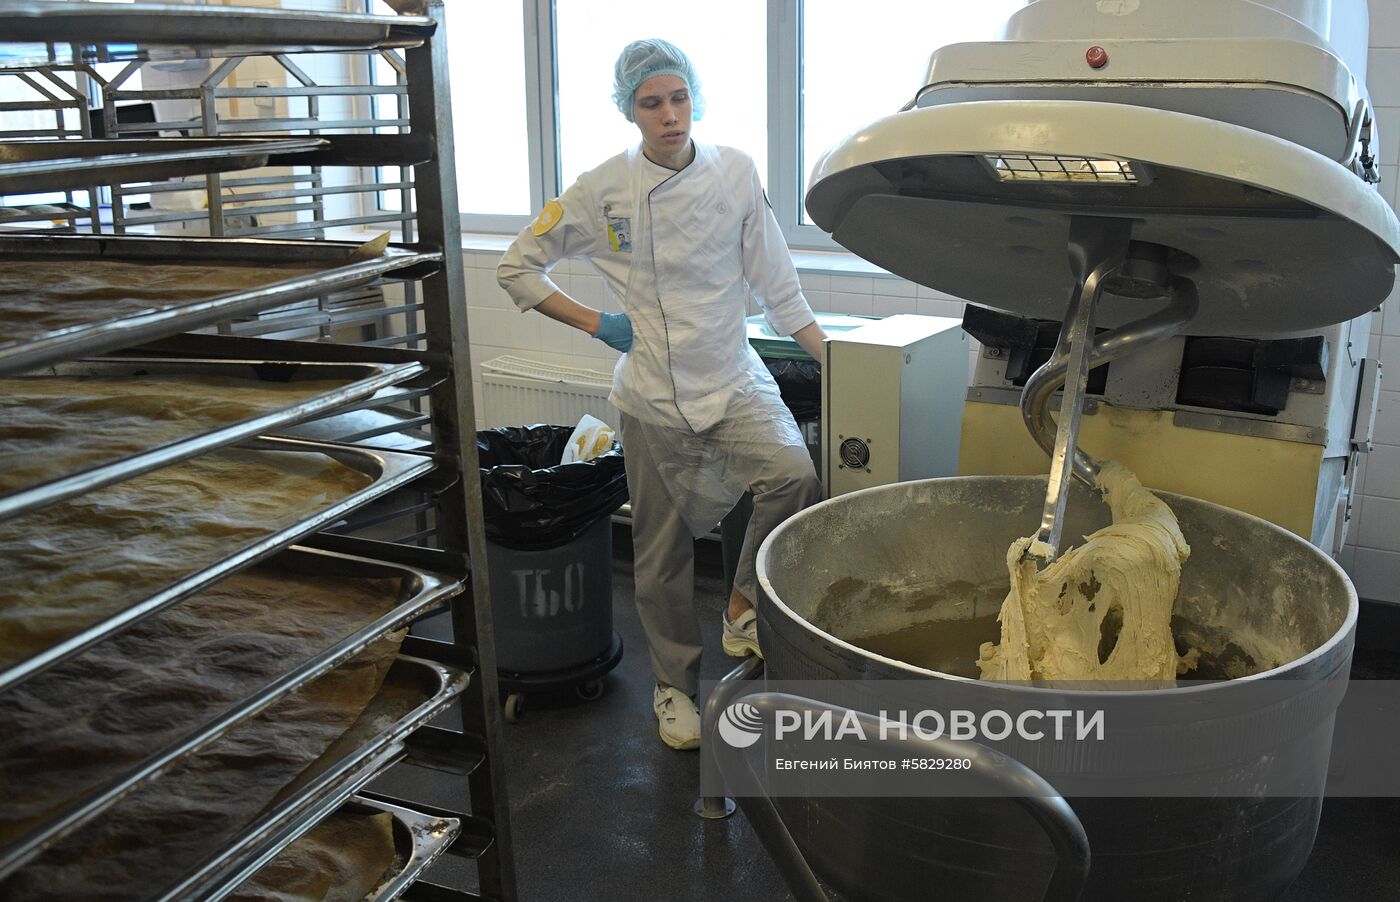 Фабрика бортового питания аэропорта Домодедово 